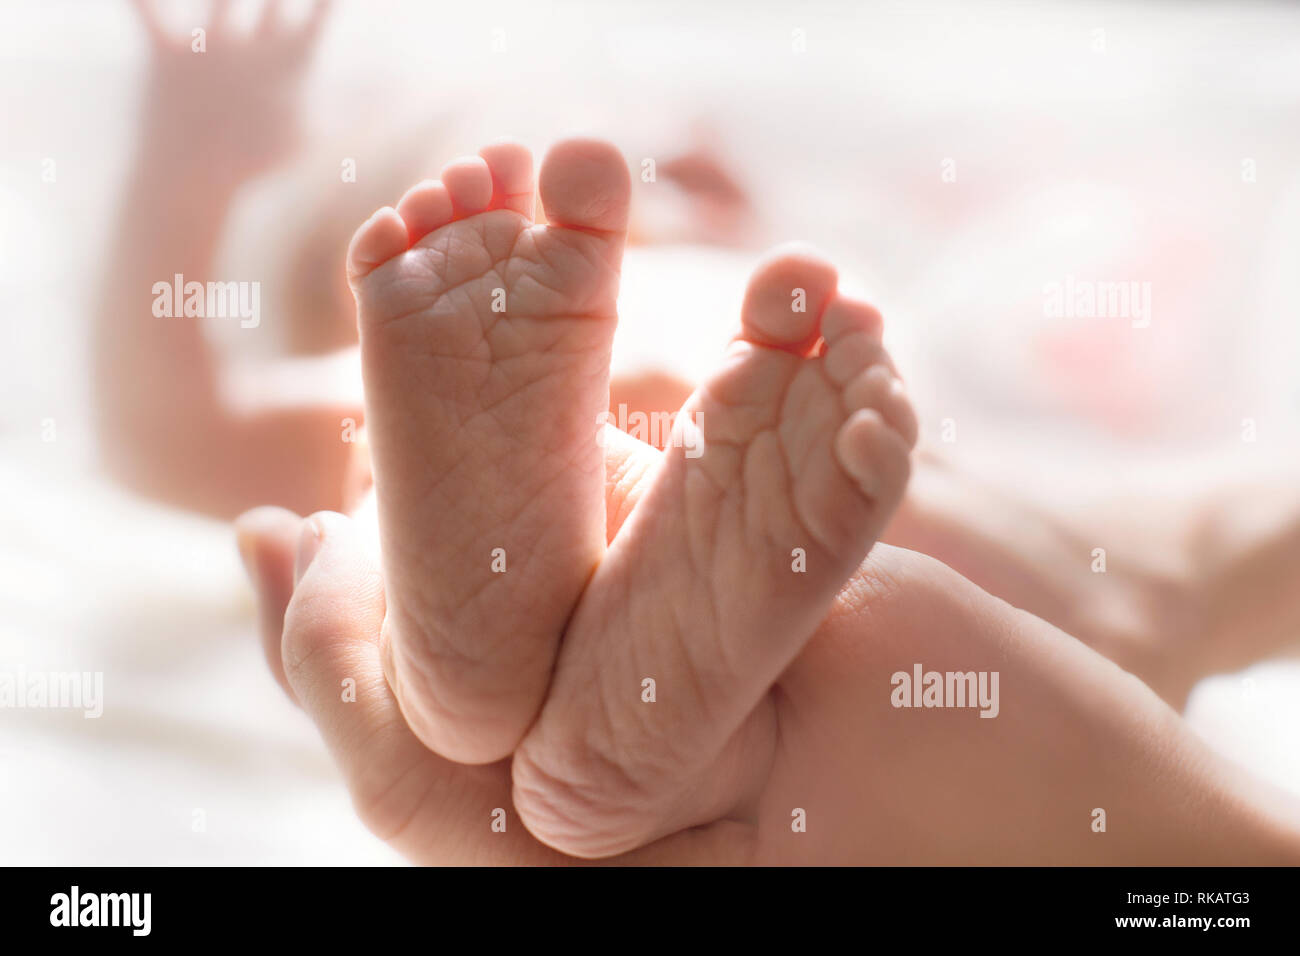 Mano Madre Sujetando Pies De Bebé Recién Nacidos. Concepto De Asistencia  Sanitaria. Recién Nacido En El Hospital Foto de archivo - Imagen de padre,  lindo: 253616384